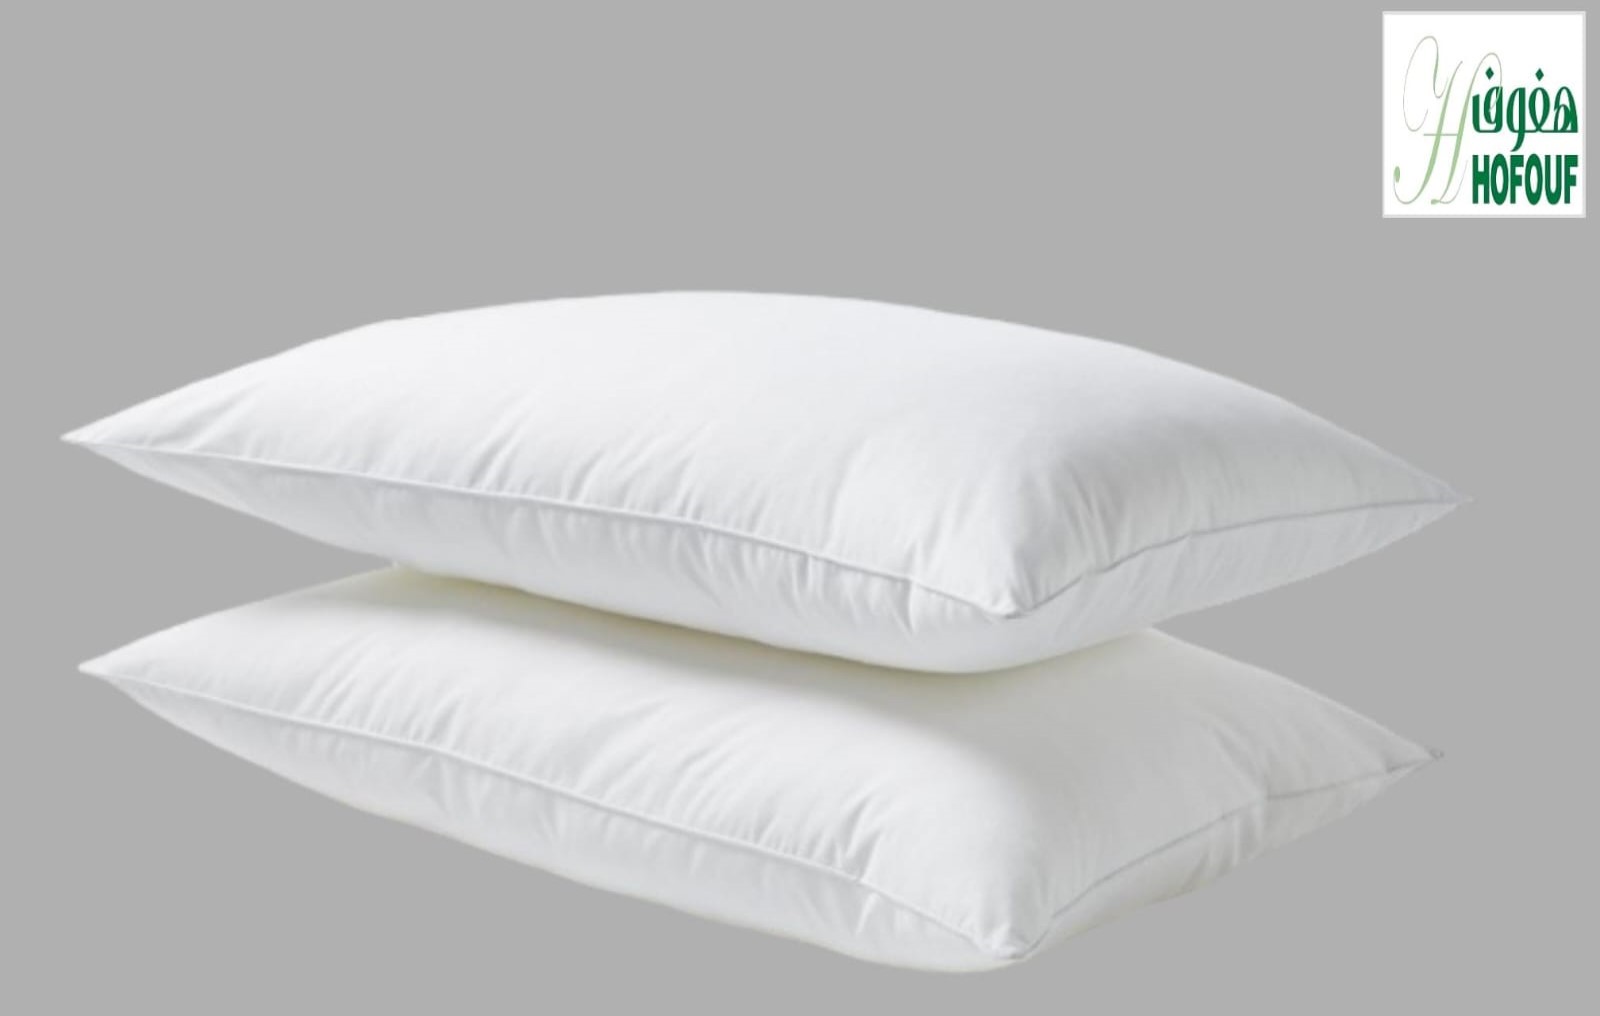 Hofouf Pillow